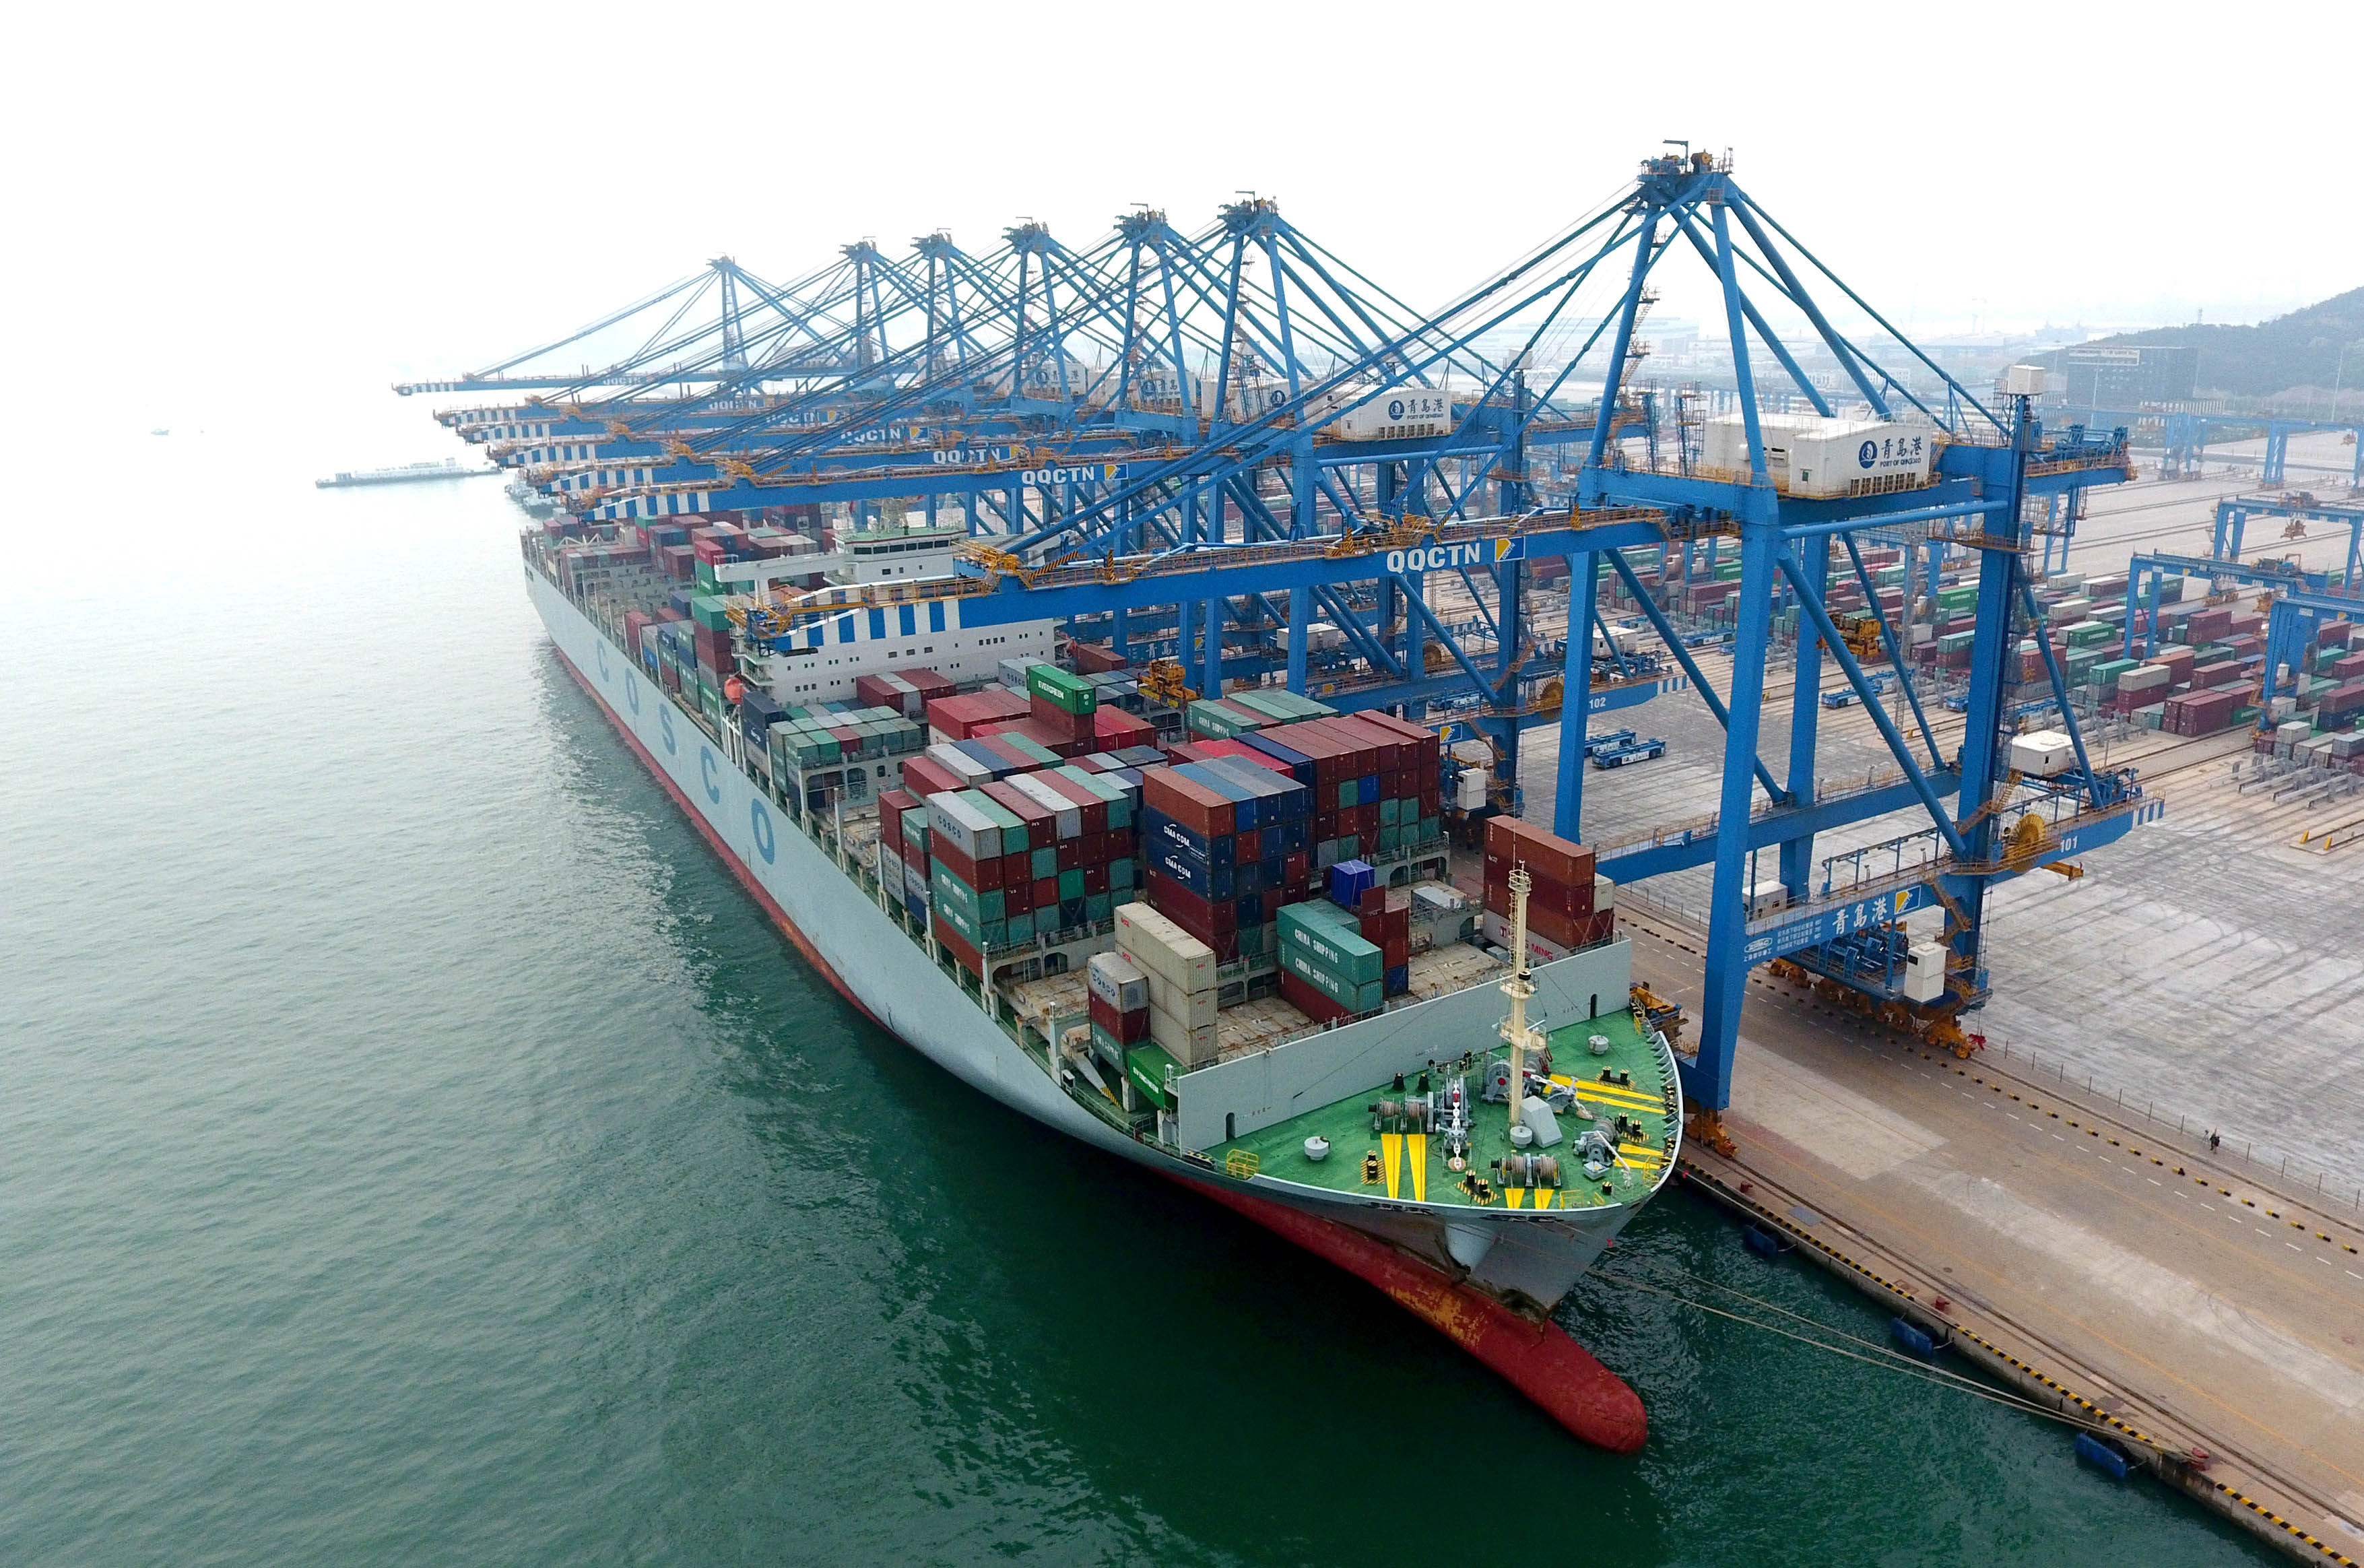 青岛:亚洲首个全自动化集装箱码头投入运营